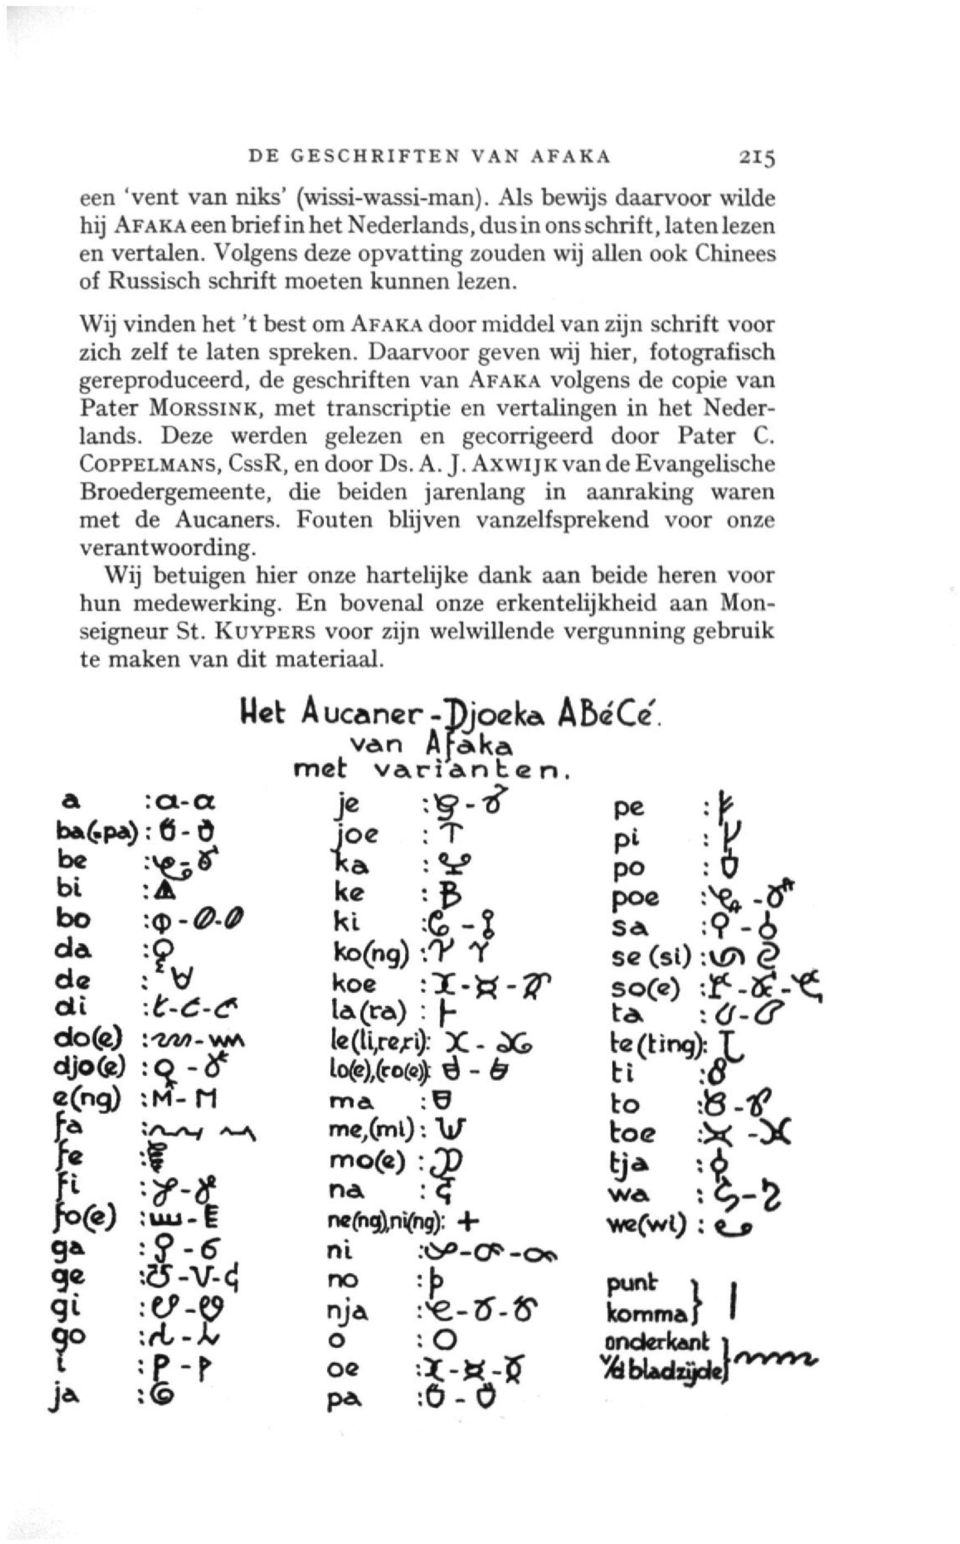 Daarvoor geven wij hier, fotografisch gereproduceerd, de geschriften van AFAKA volgens de copie van Pater MORSSINK, met transcriptie en vertalingen in het Nederlands.